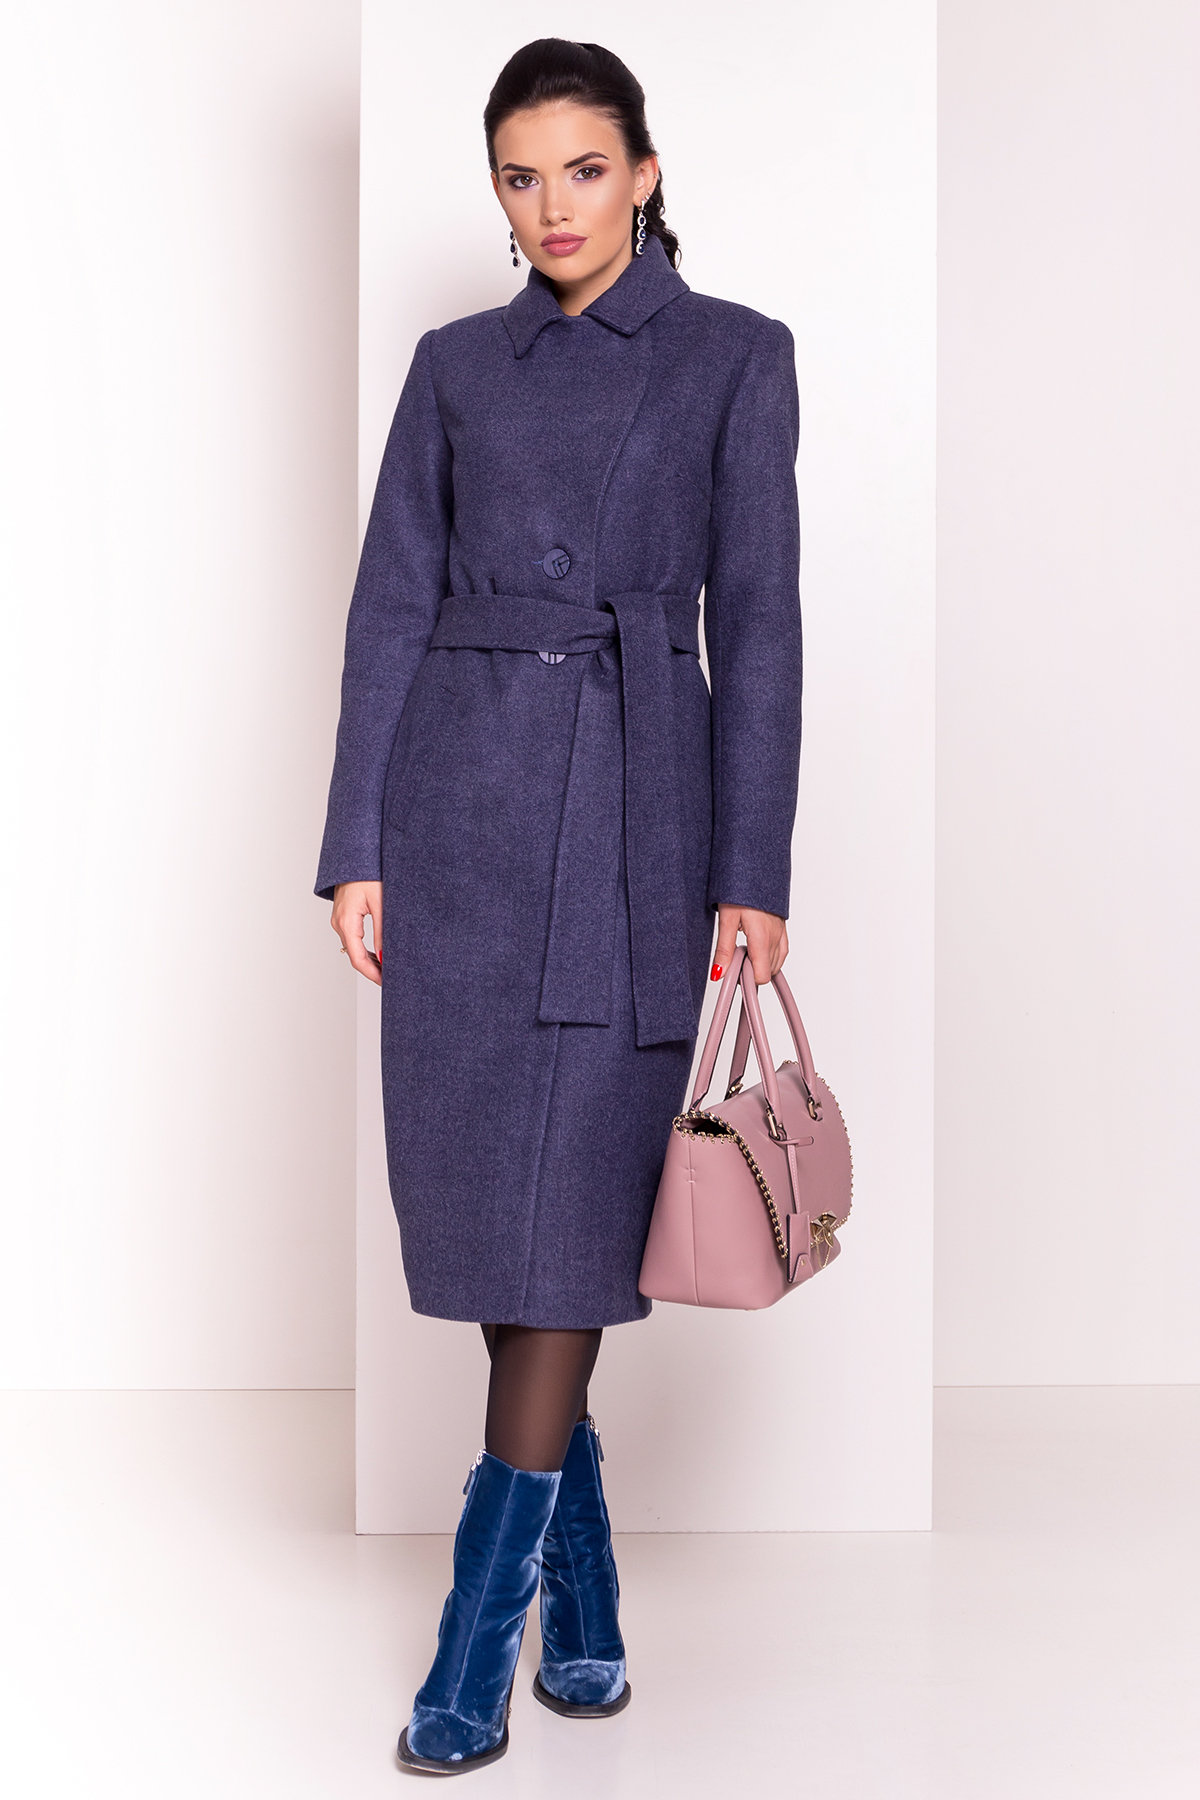 Женское пальто от производителя от Modus Пальто Габриэлла 5560